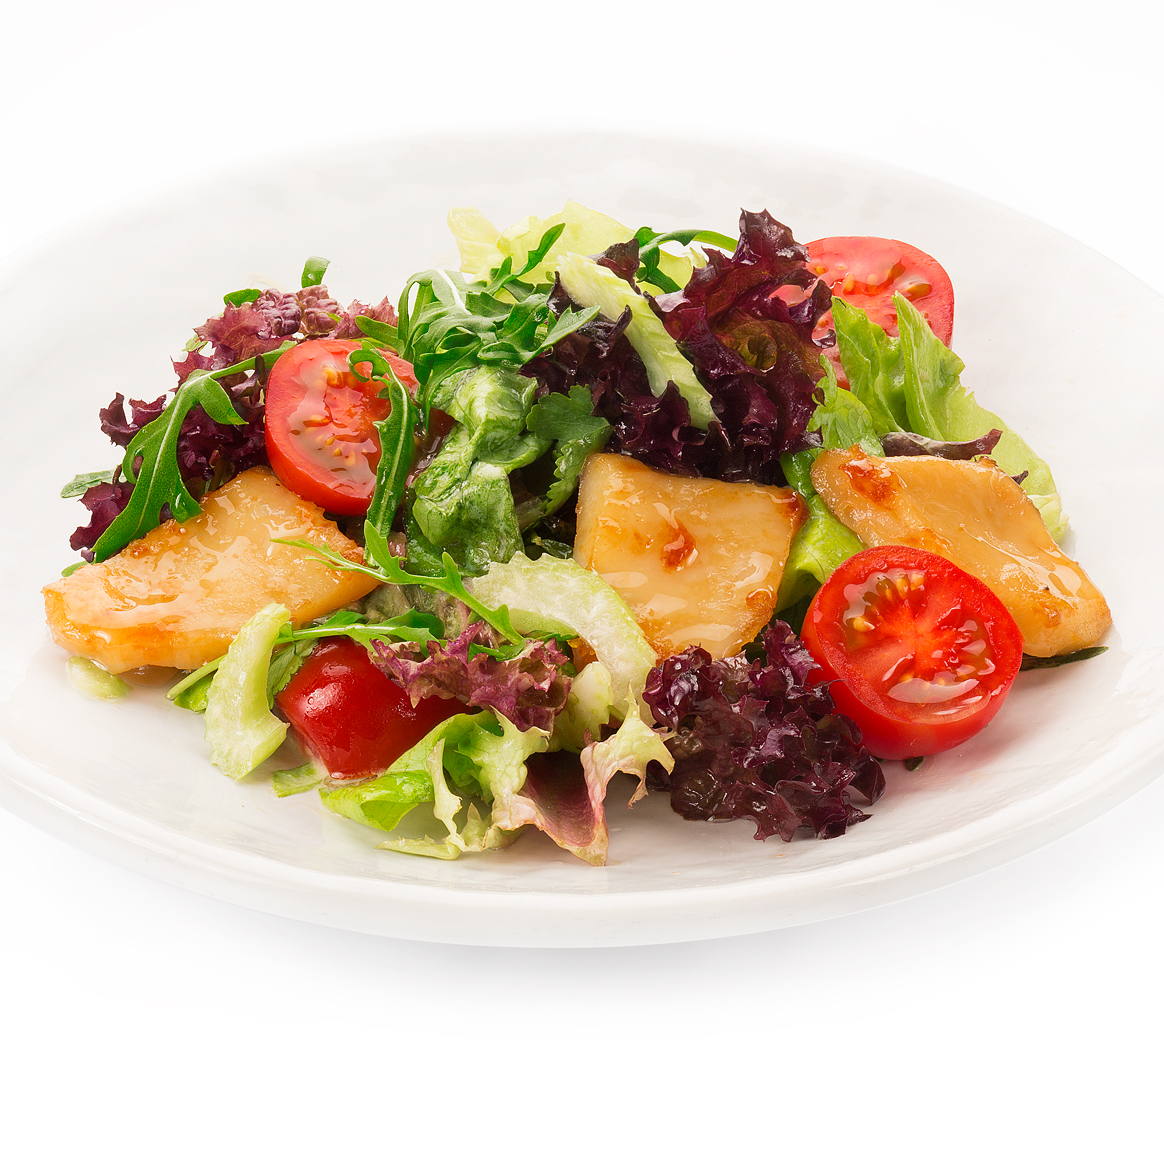 Тануки салаты. Салаты в ресторанах. Салат из экзотических продуктов. Теплый салат Тануки. Необычное сочетание продуктов в салате.